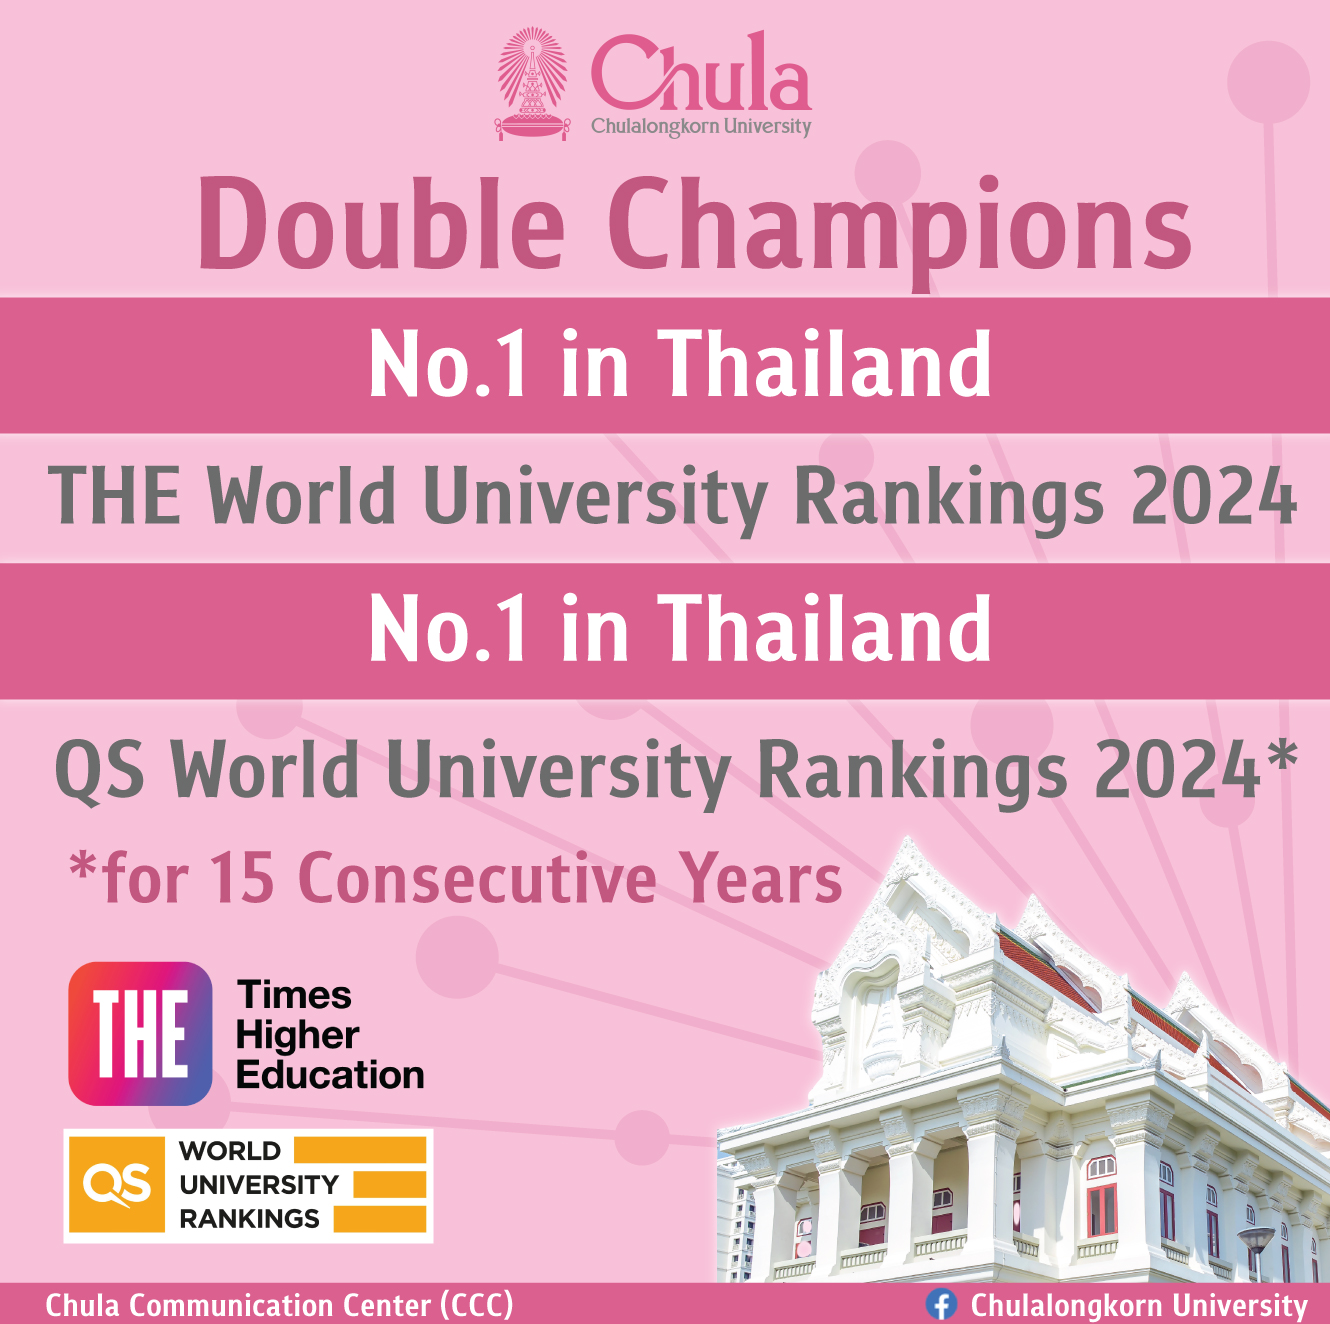 จุฬาฯ ครองอันดับ 1 มหาวิทยาลัยไทย จากสถาบันหลักของโลก 2 แห่ง Times Higher Education 2024 และ QS World University Rankings 2024